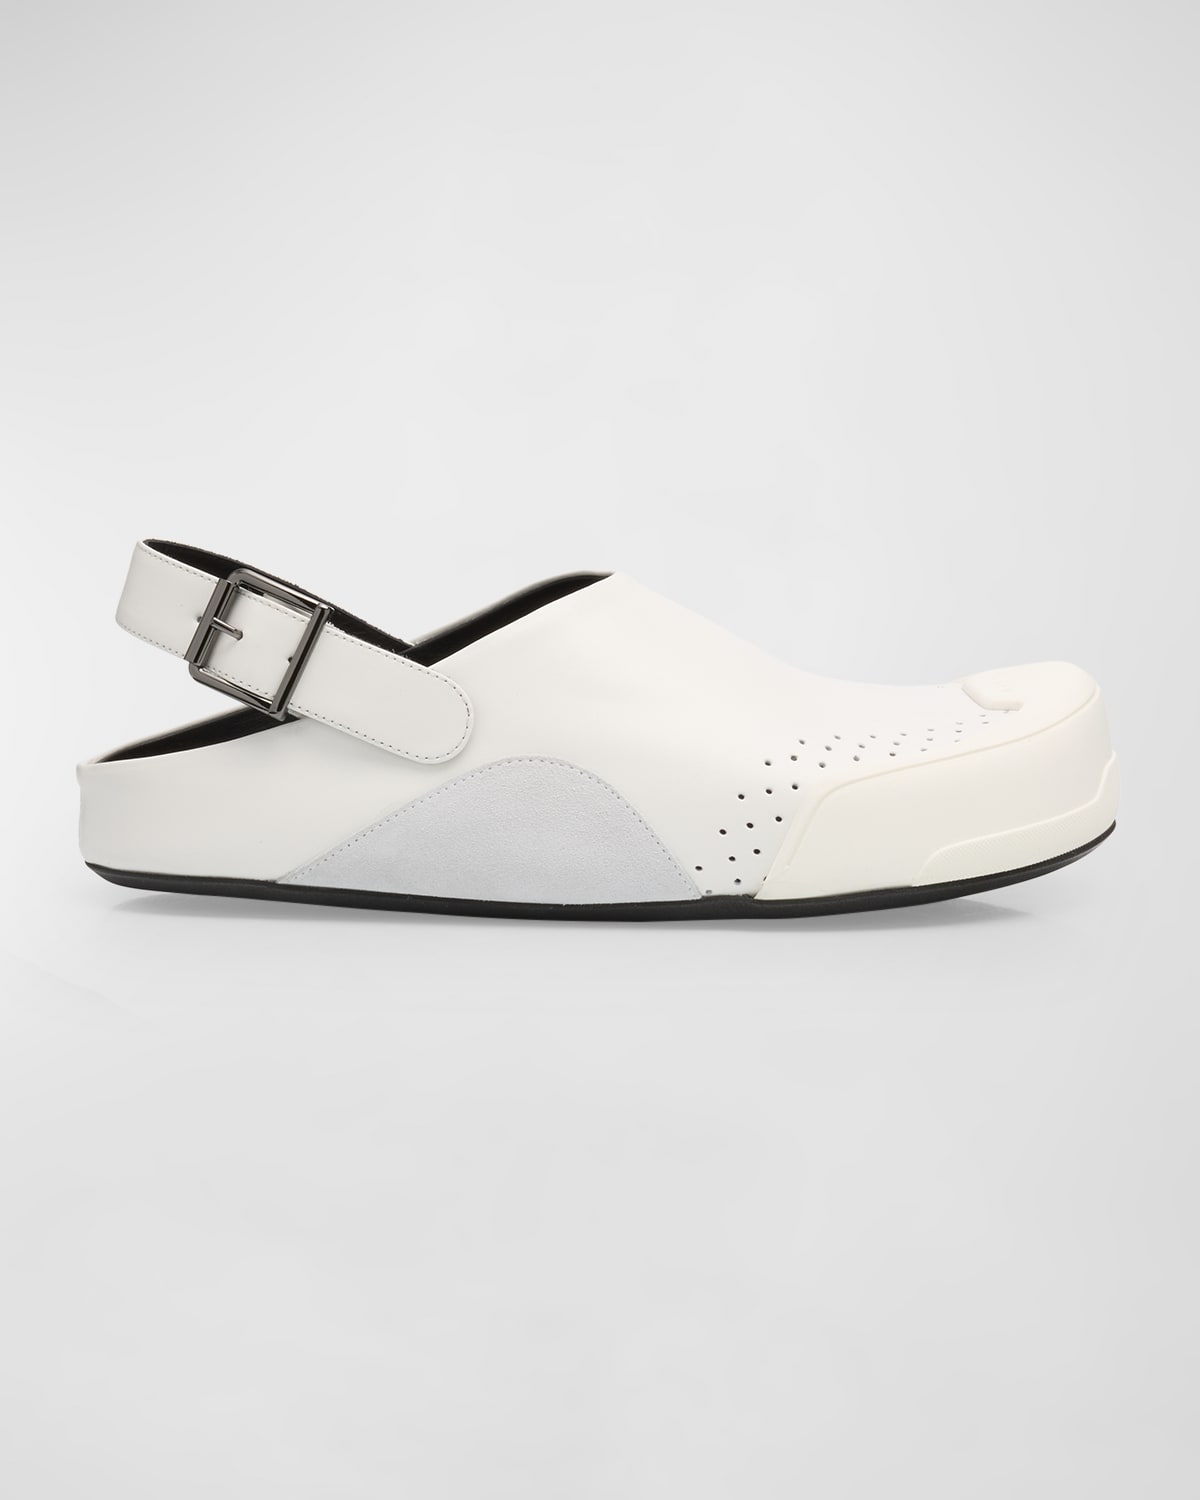 Shop Marni Men's Sabot Leather Mule Sandals In Light/grey